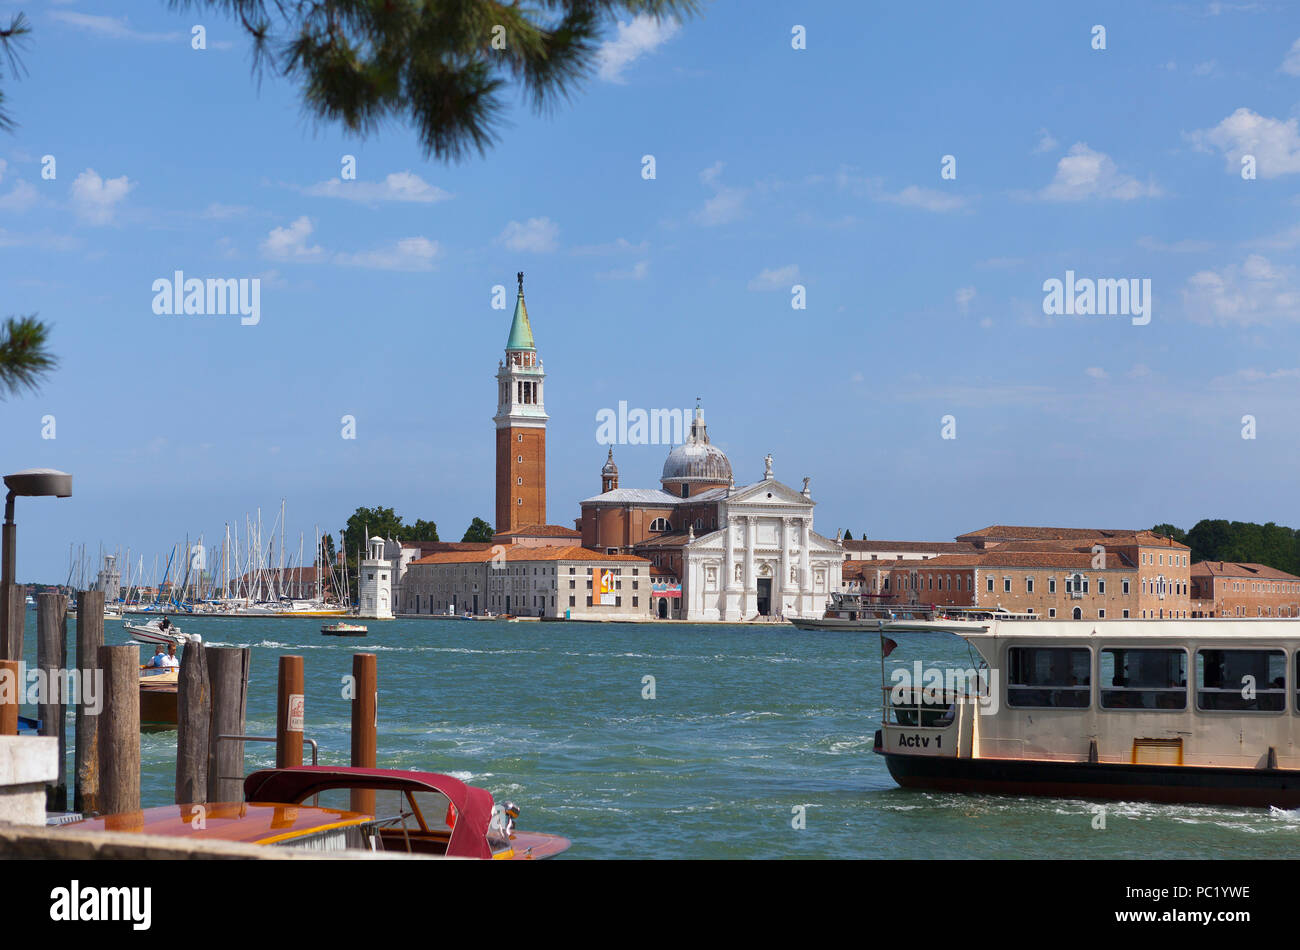 Church of San Giorgio Maggiore with boats, Venice Stock Photo